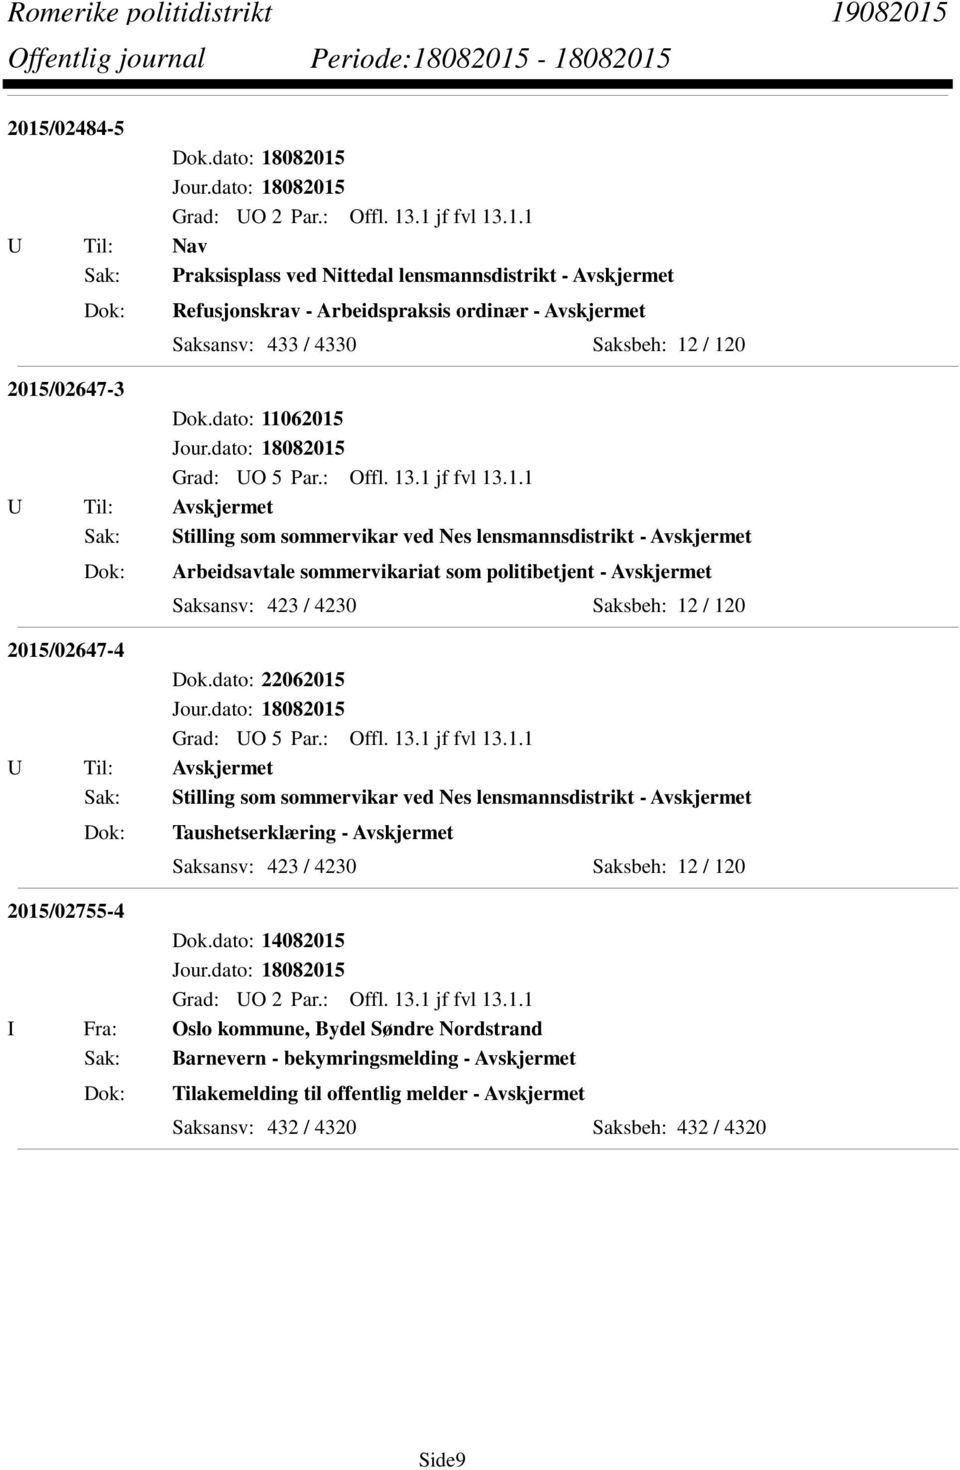 2015/02647-4 Dok.dato: 22062015 Sak: Stilling som sommervikar ved Nes lensmannsdistrikt - Avskjermet Taushetserklæring - Avskjermet Saksansv: 423 / 4230 Saksbeh: 12 / 120 2015/02755-4 Dok.